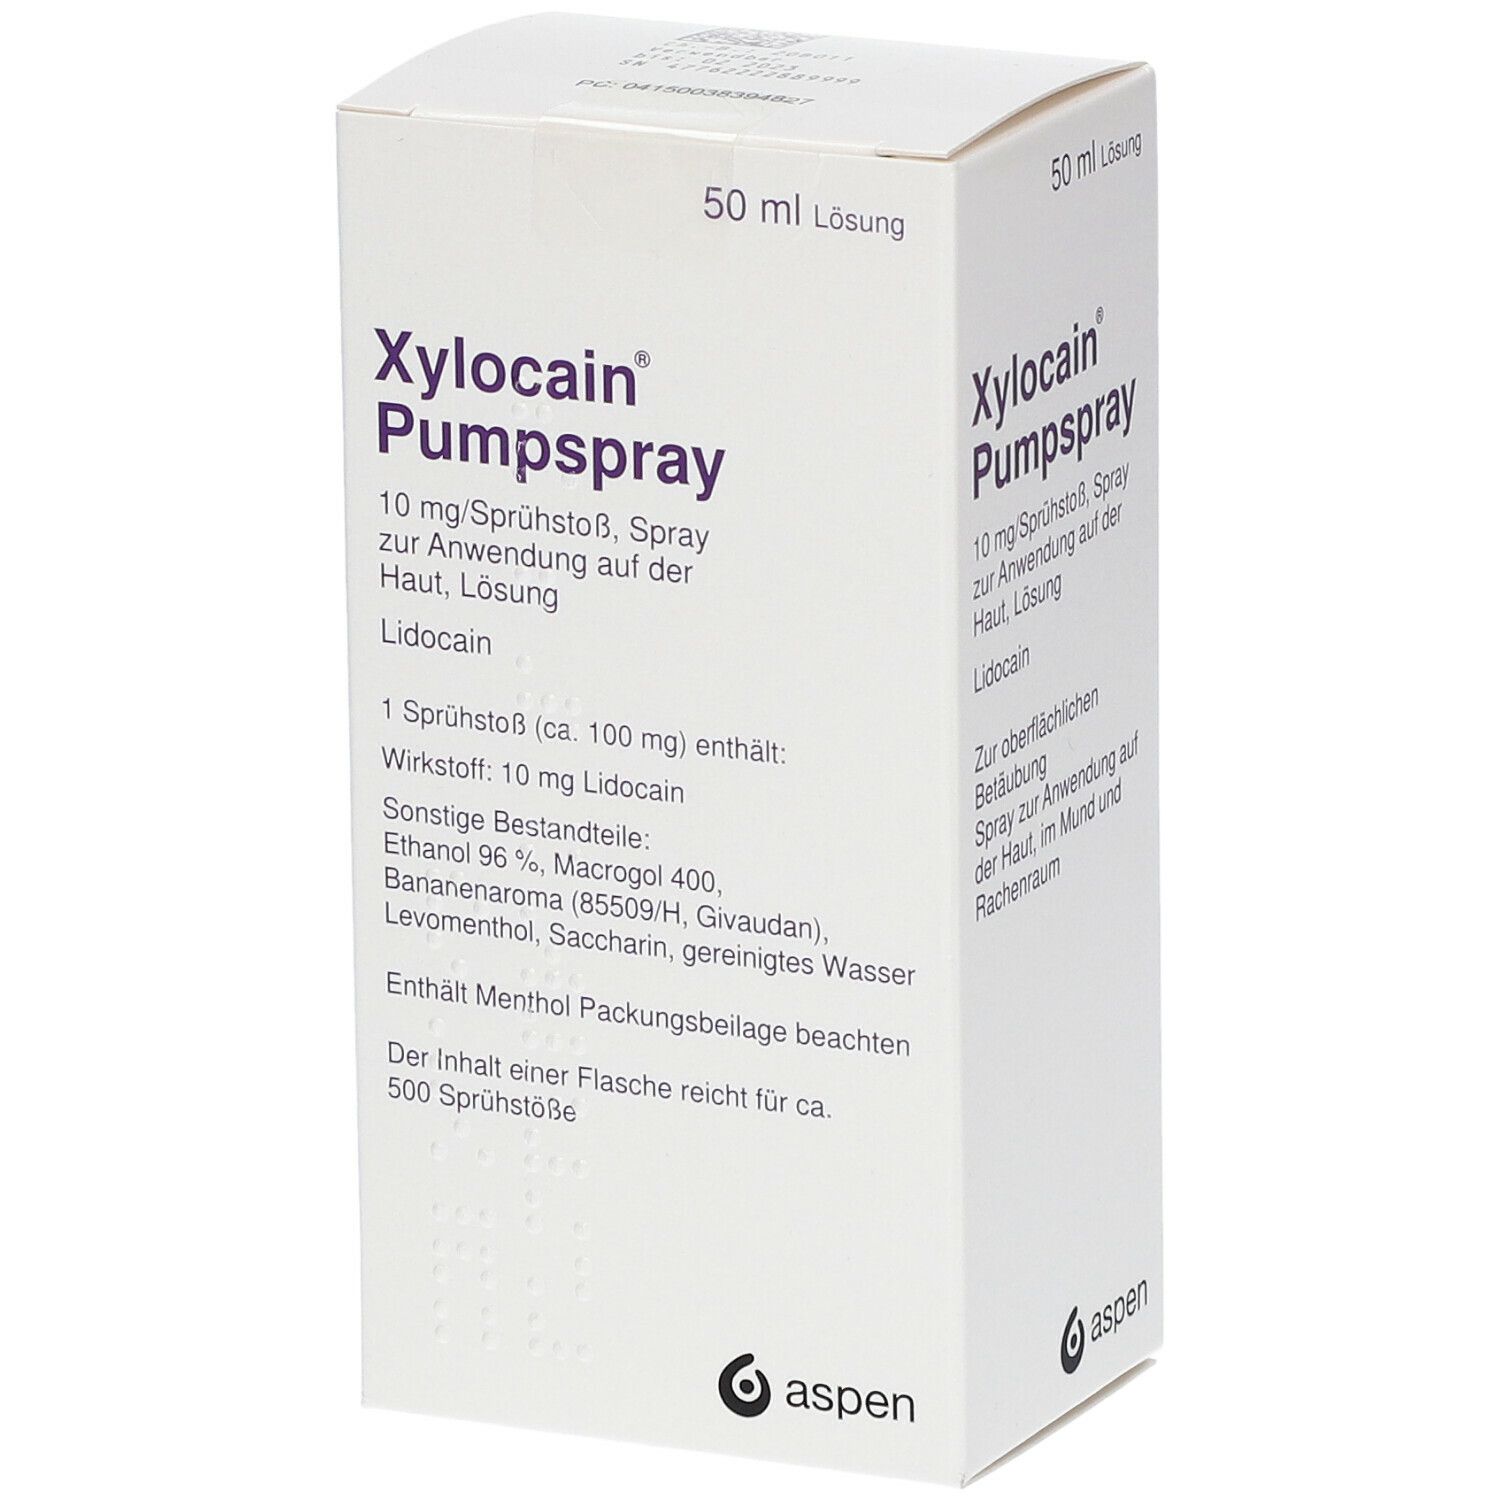 Xylocain® Pumpspray